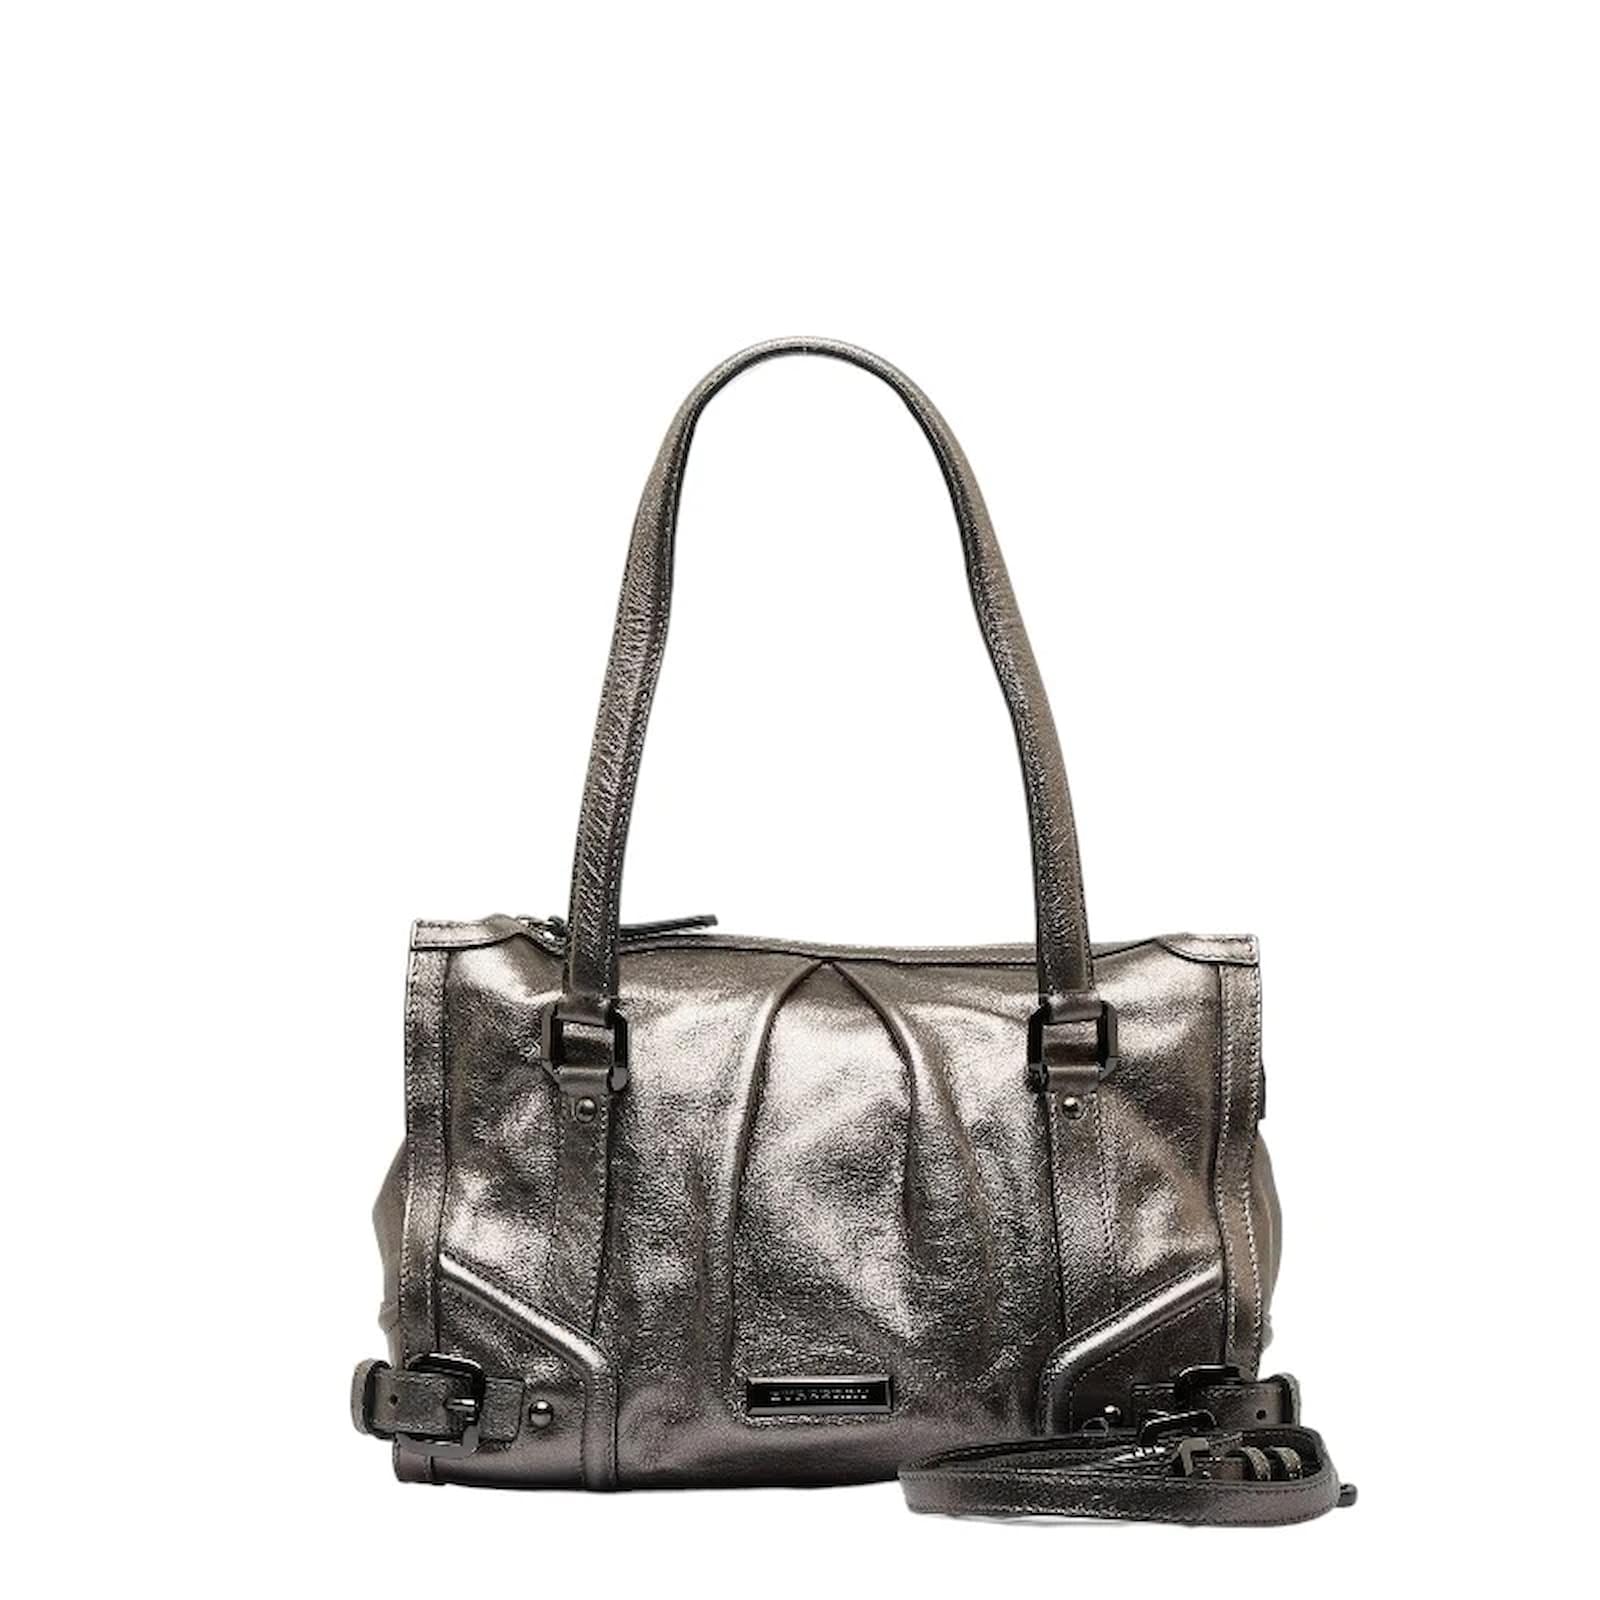 Burberry Handbags. in Metallic